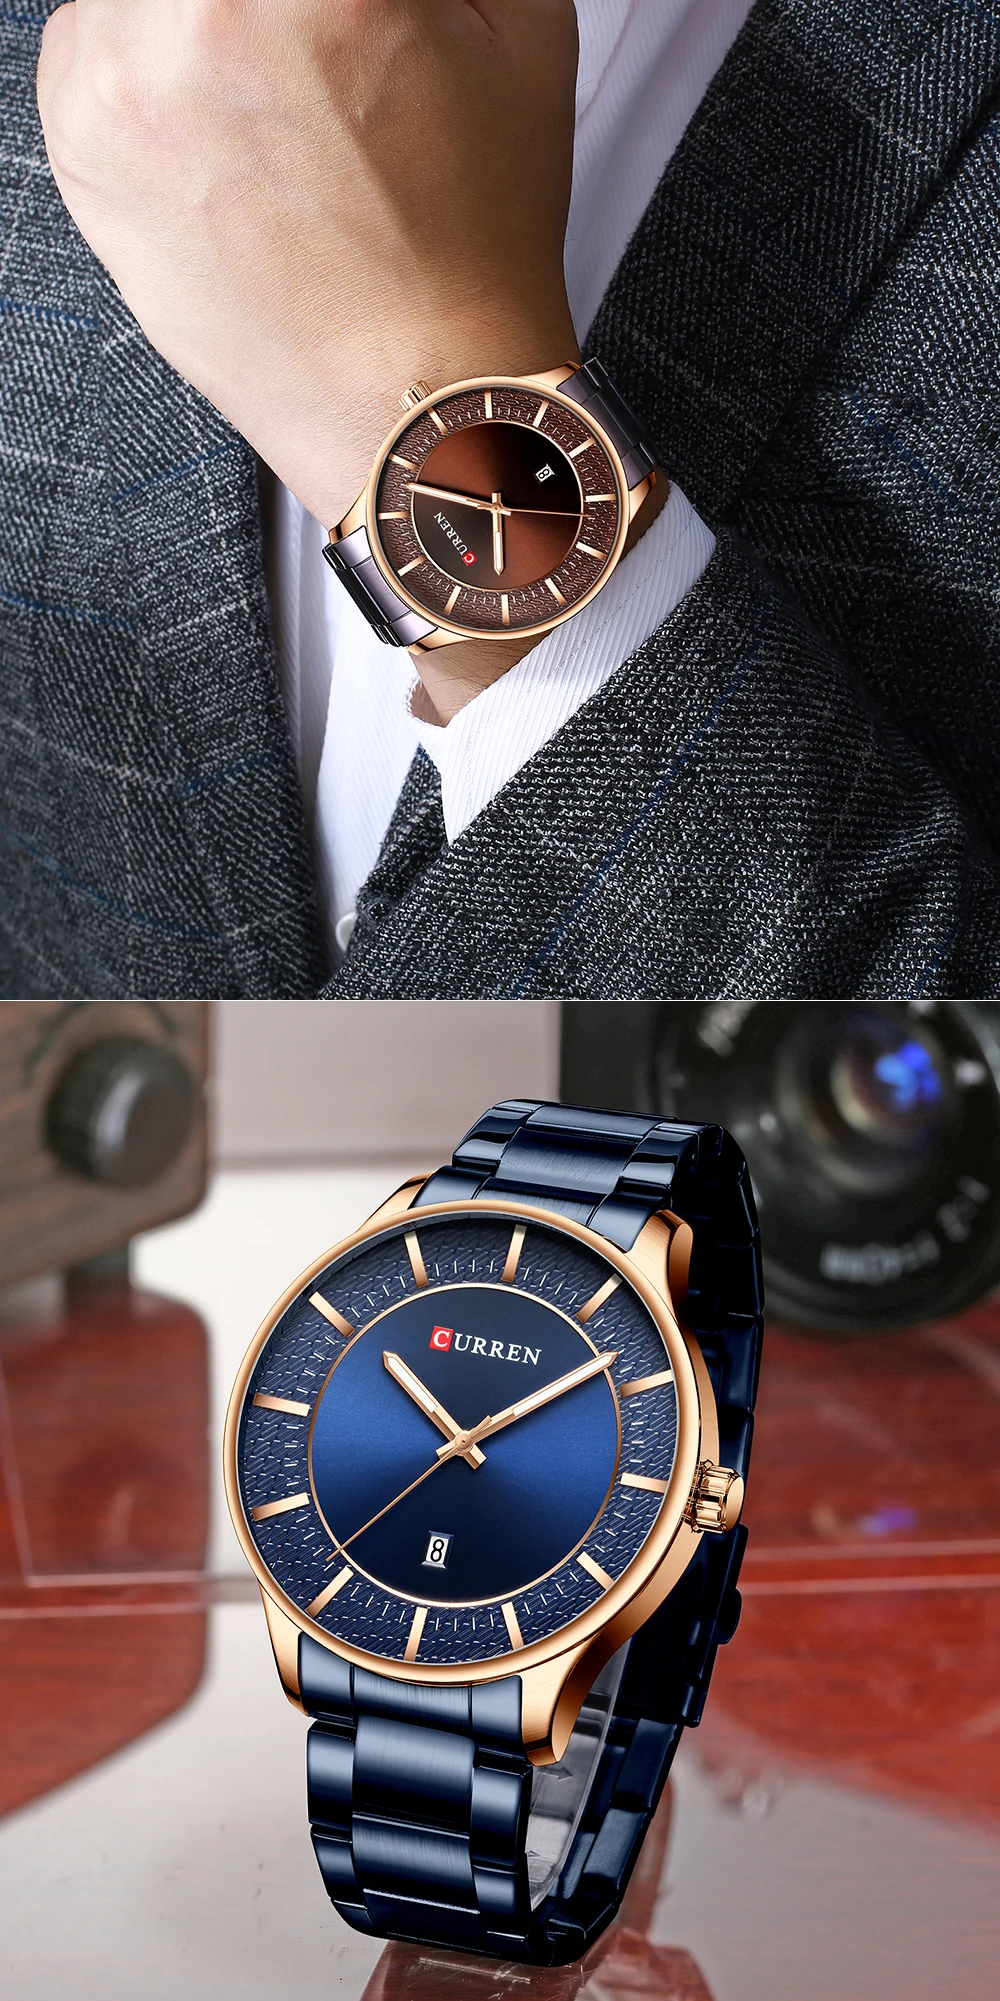 Топ Элитный бренд Curren Мужские s часы Новая мода кварцевые мужские часы Бизнес водонепроницаемые наручные мужские часы Relogio Masculino